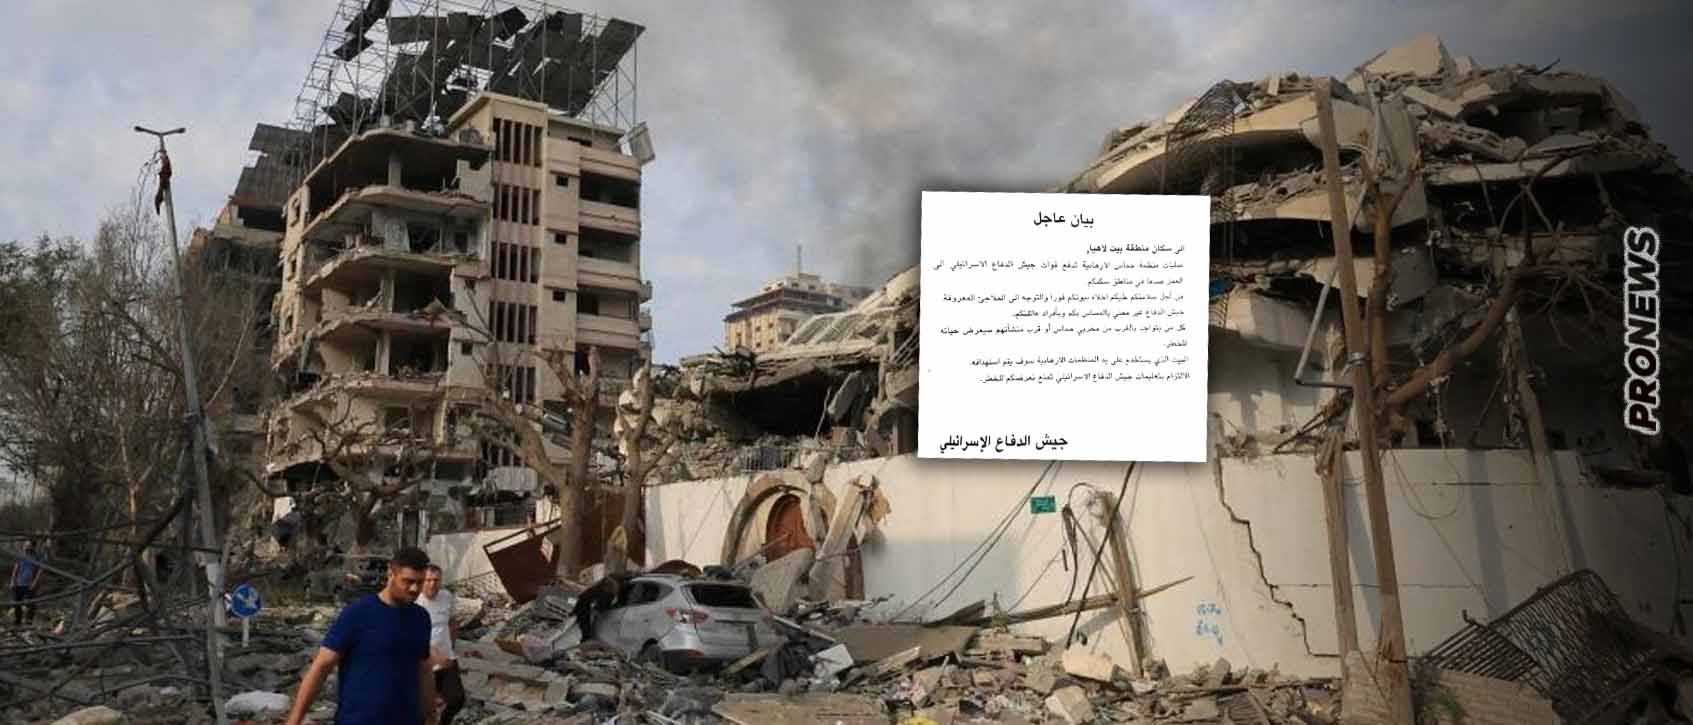 Το Ισραήλ ετοιμάζεται για ισοπέδωση της βόρειας Γάζας: Ρίχνει φυλλάδια στα αραβικά – «Εκκενώστε γιατί θα βομβαρδίσουμε»